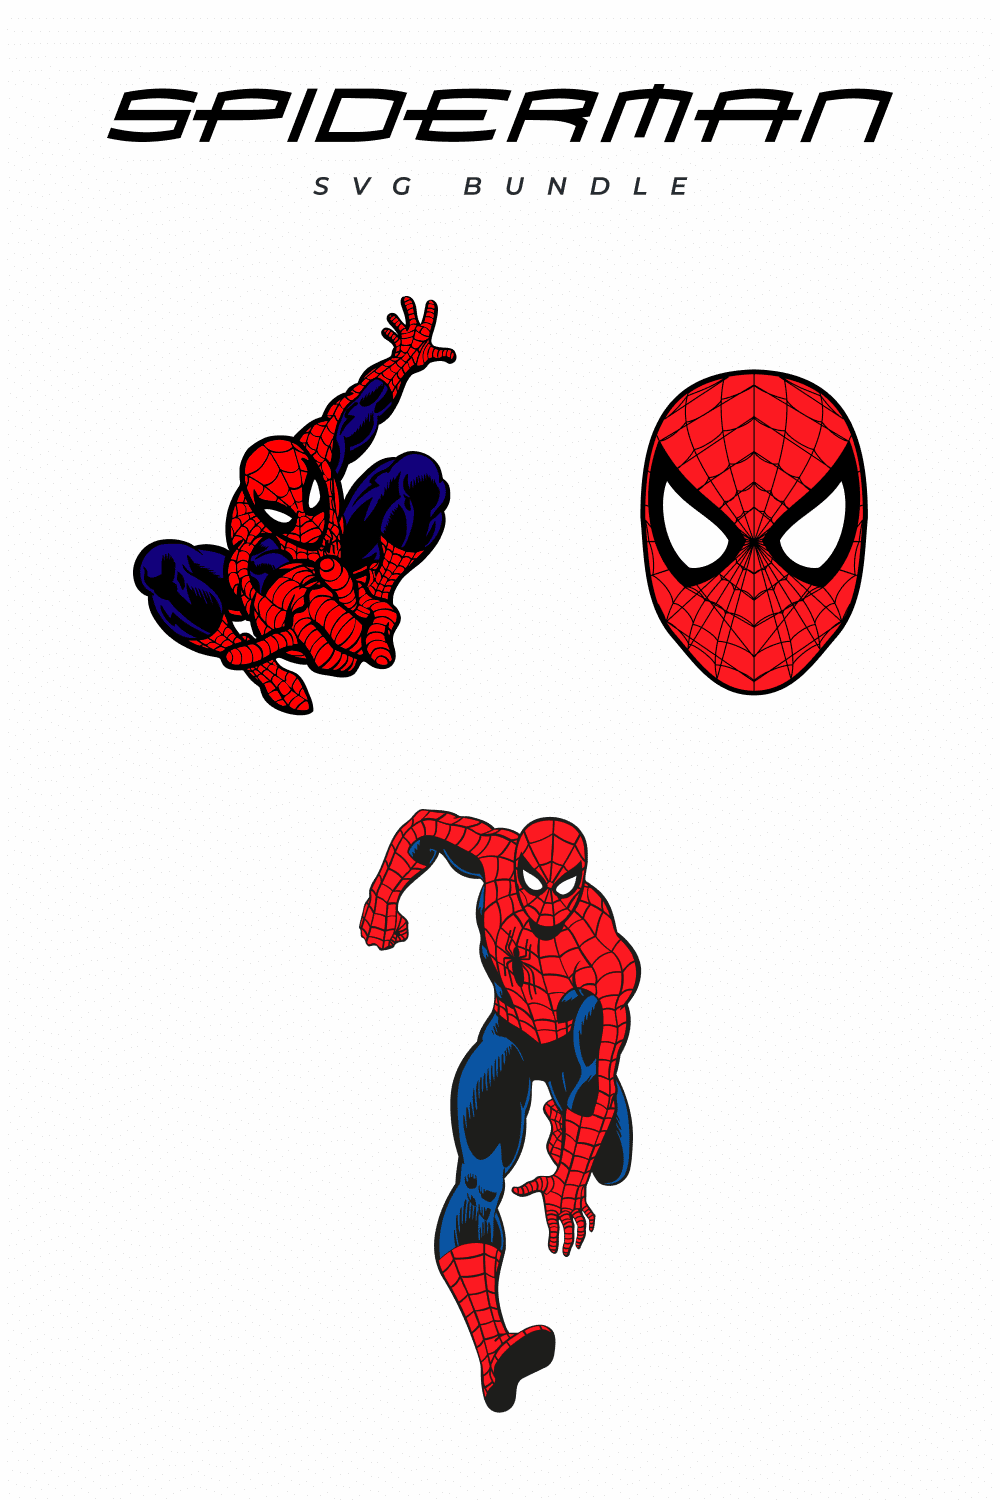 Spiderman Spider SVG bundle pinterest image.